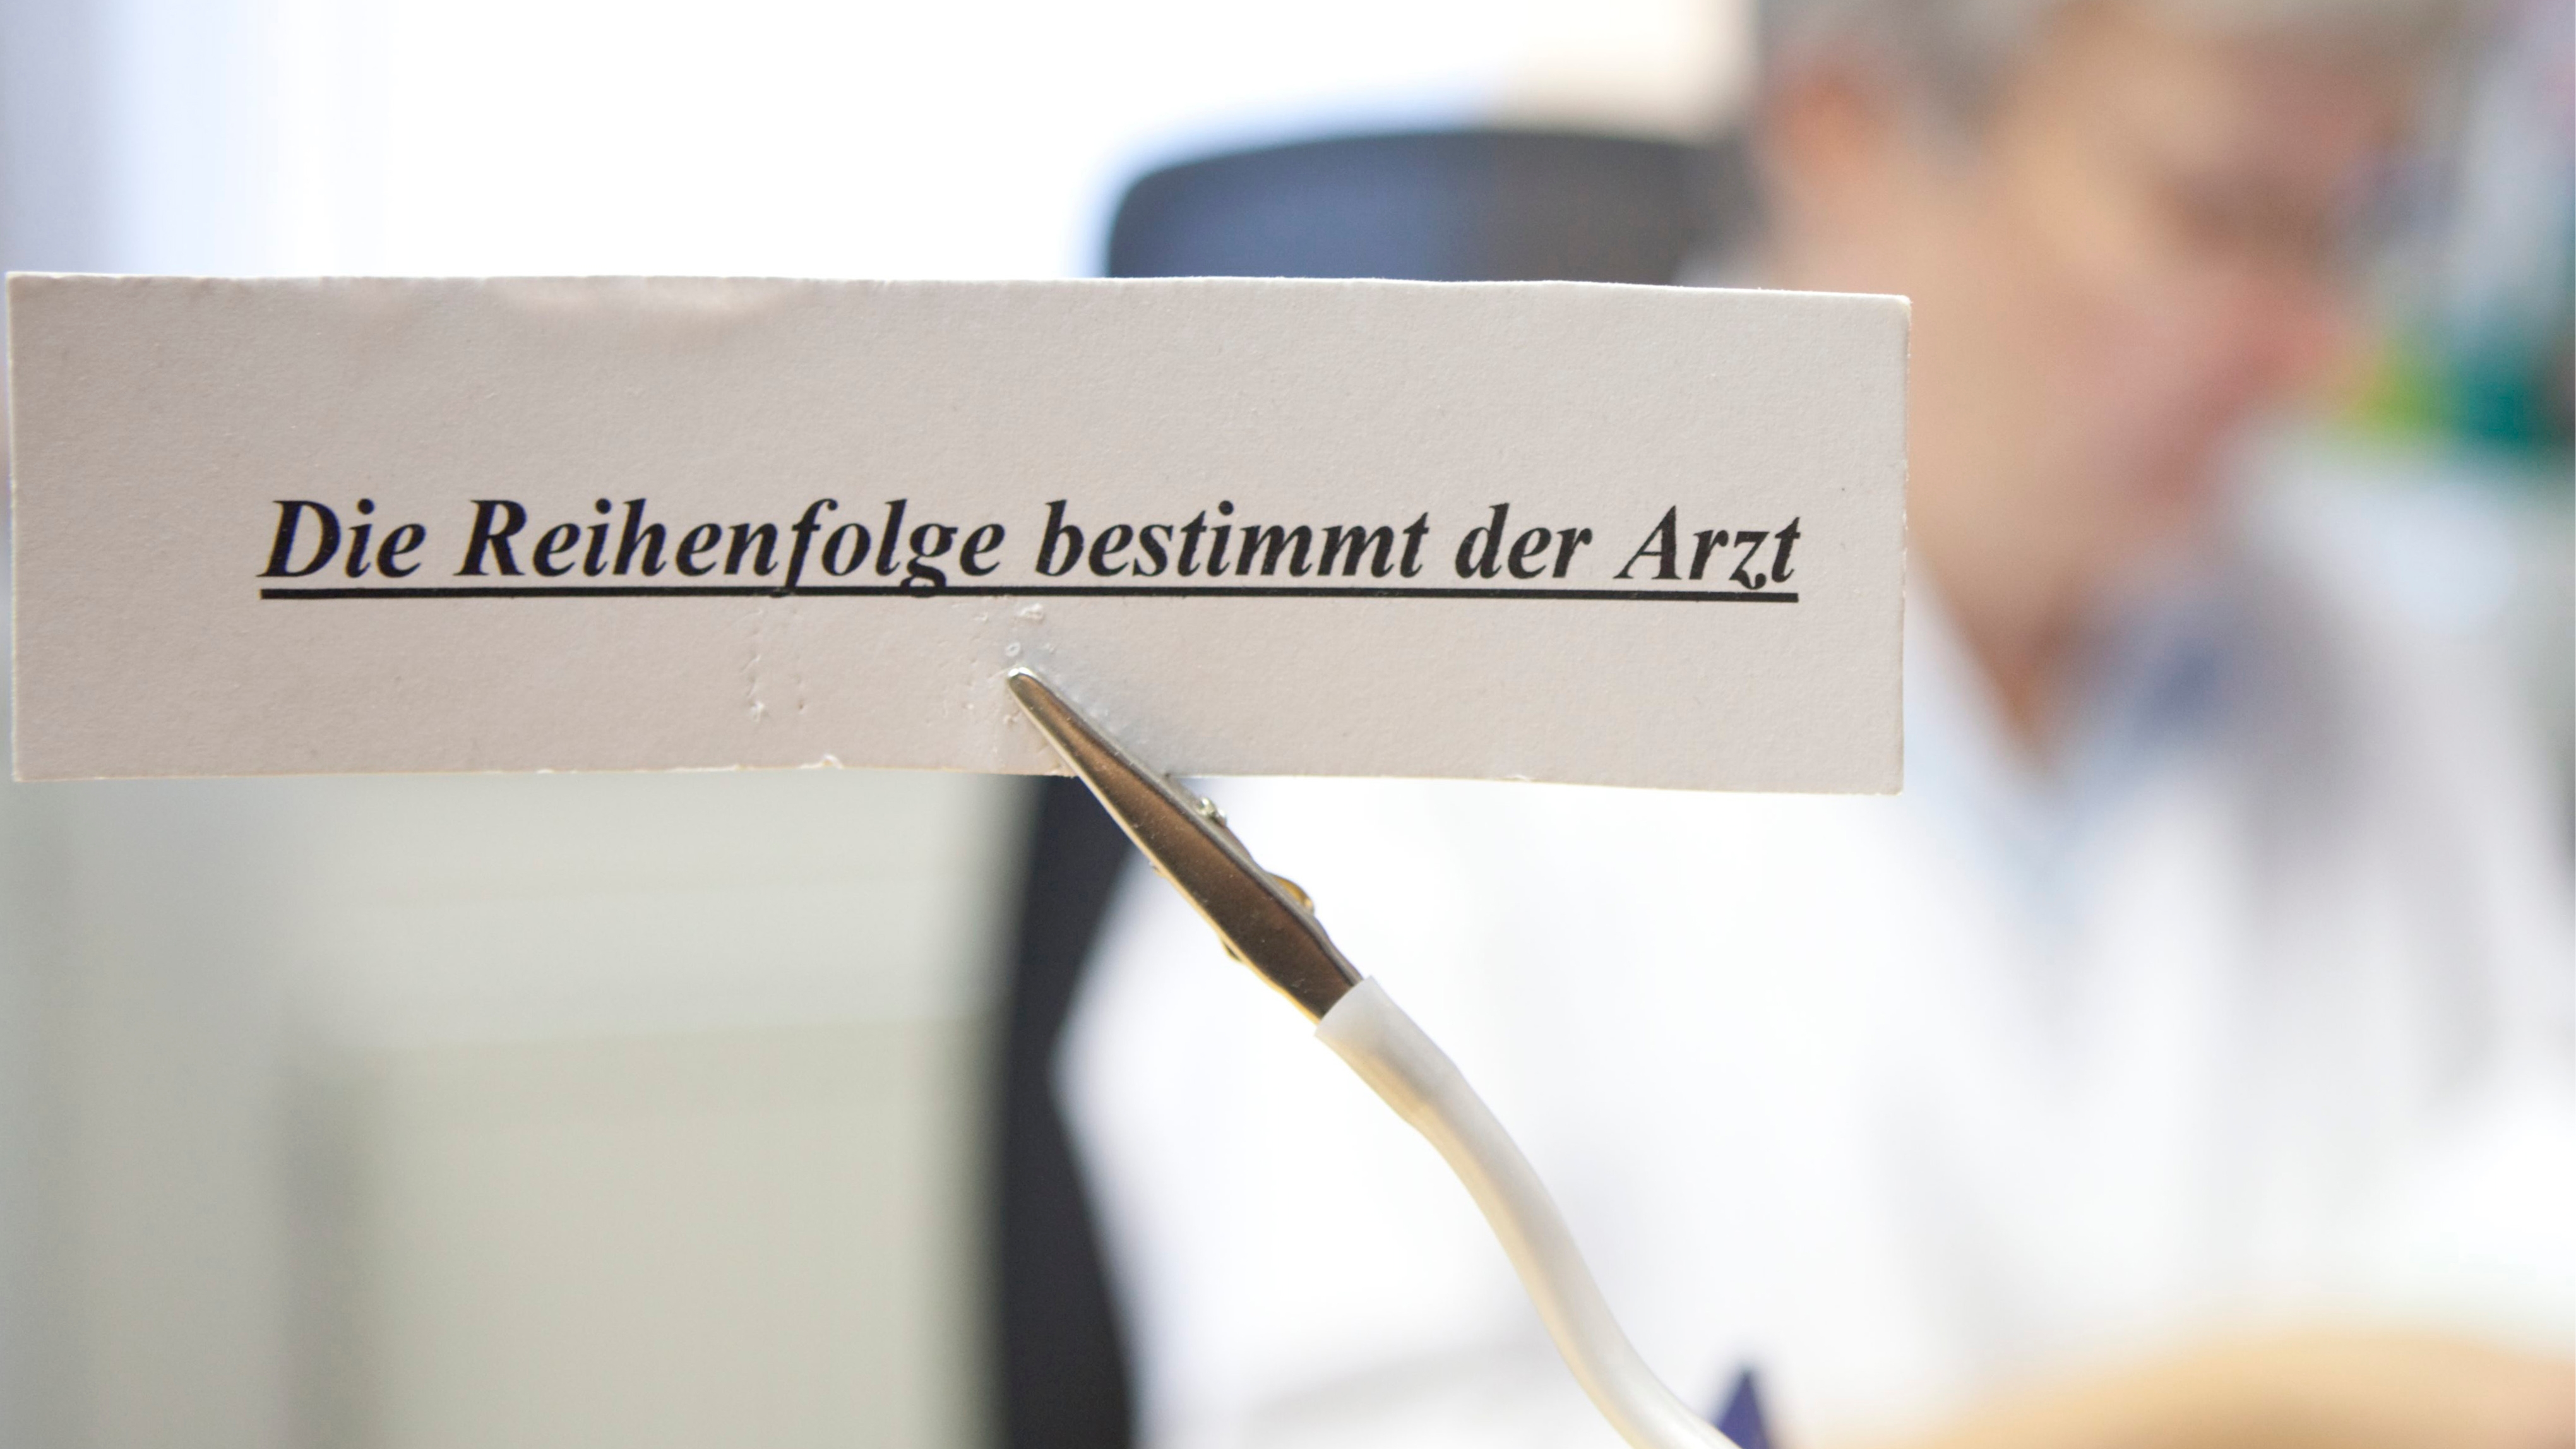 Wer zu oft zum arzt geht soll strafe zahlen - Deutschland